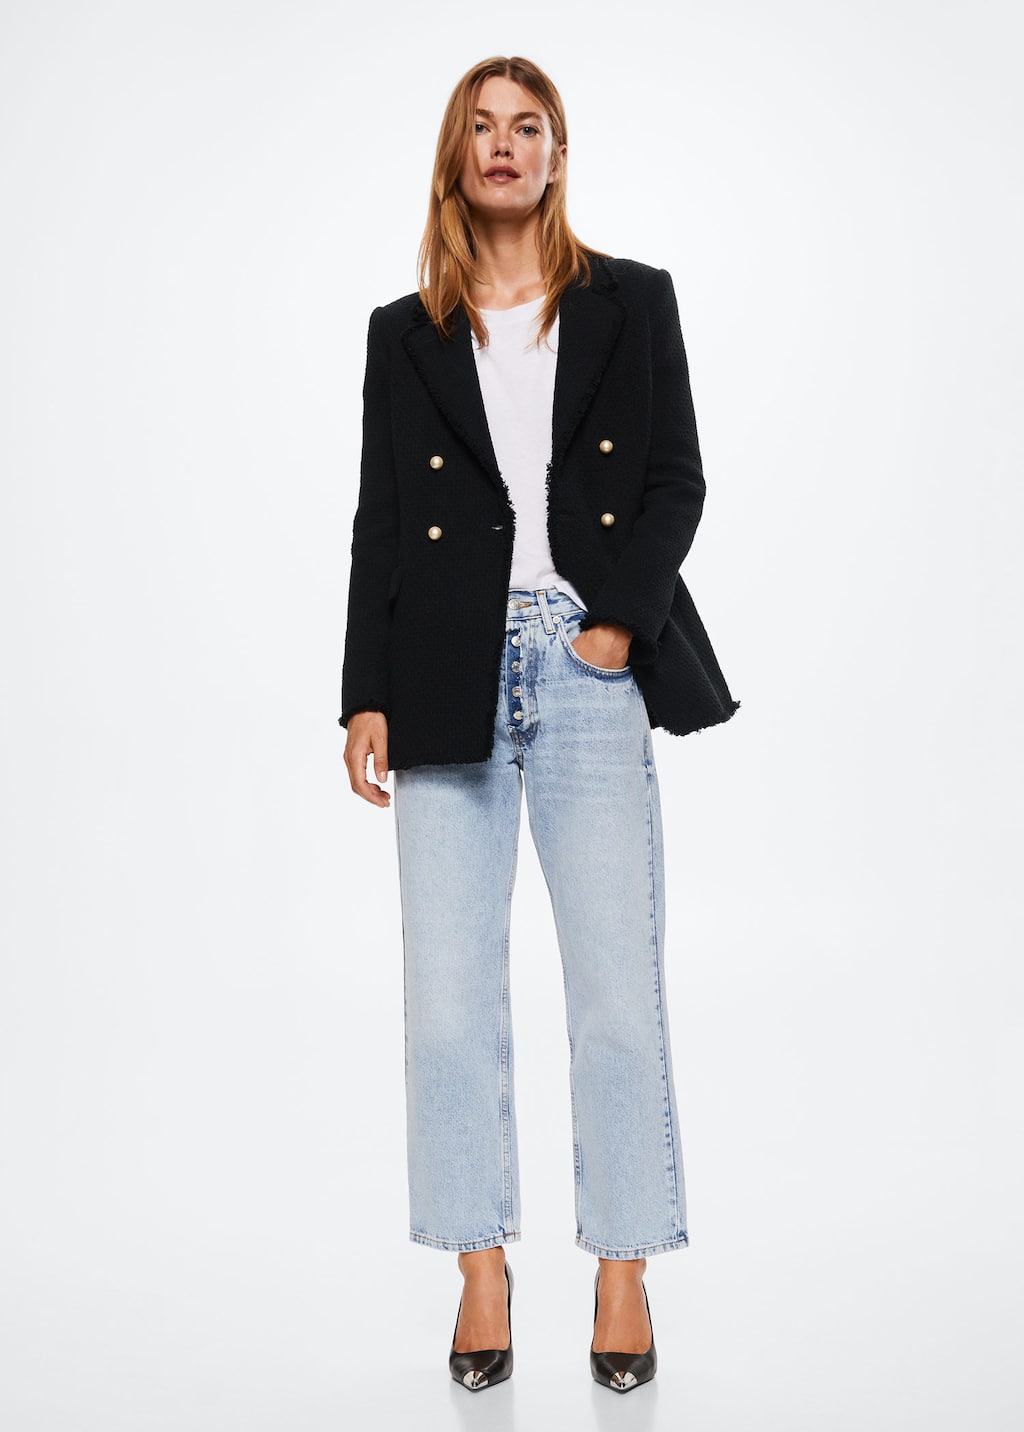 13 mẫu áo blazer mới nhất của Zara, H&M và Mango - Ảnh 20.